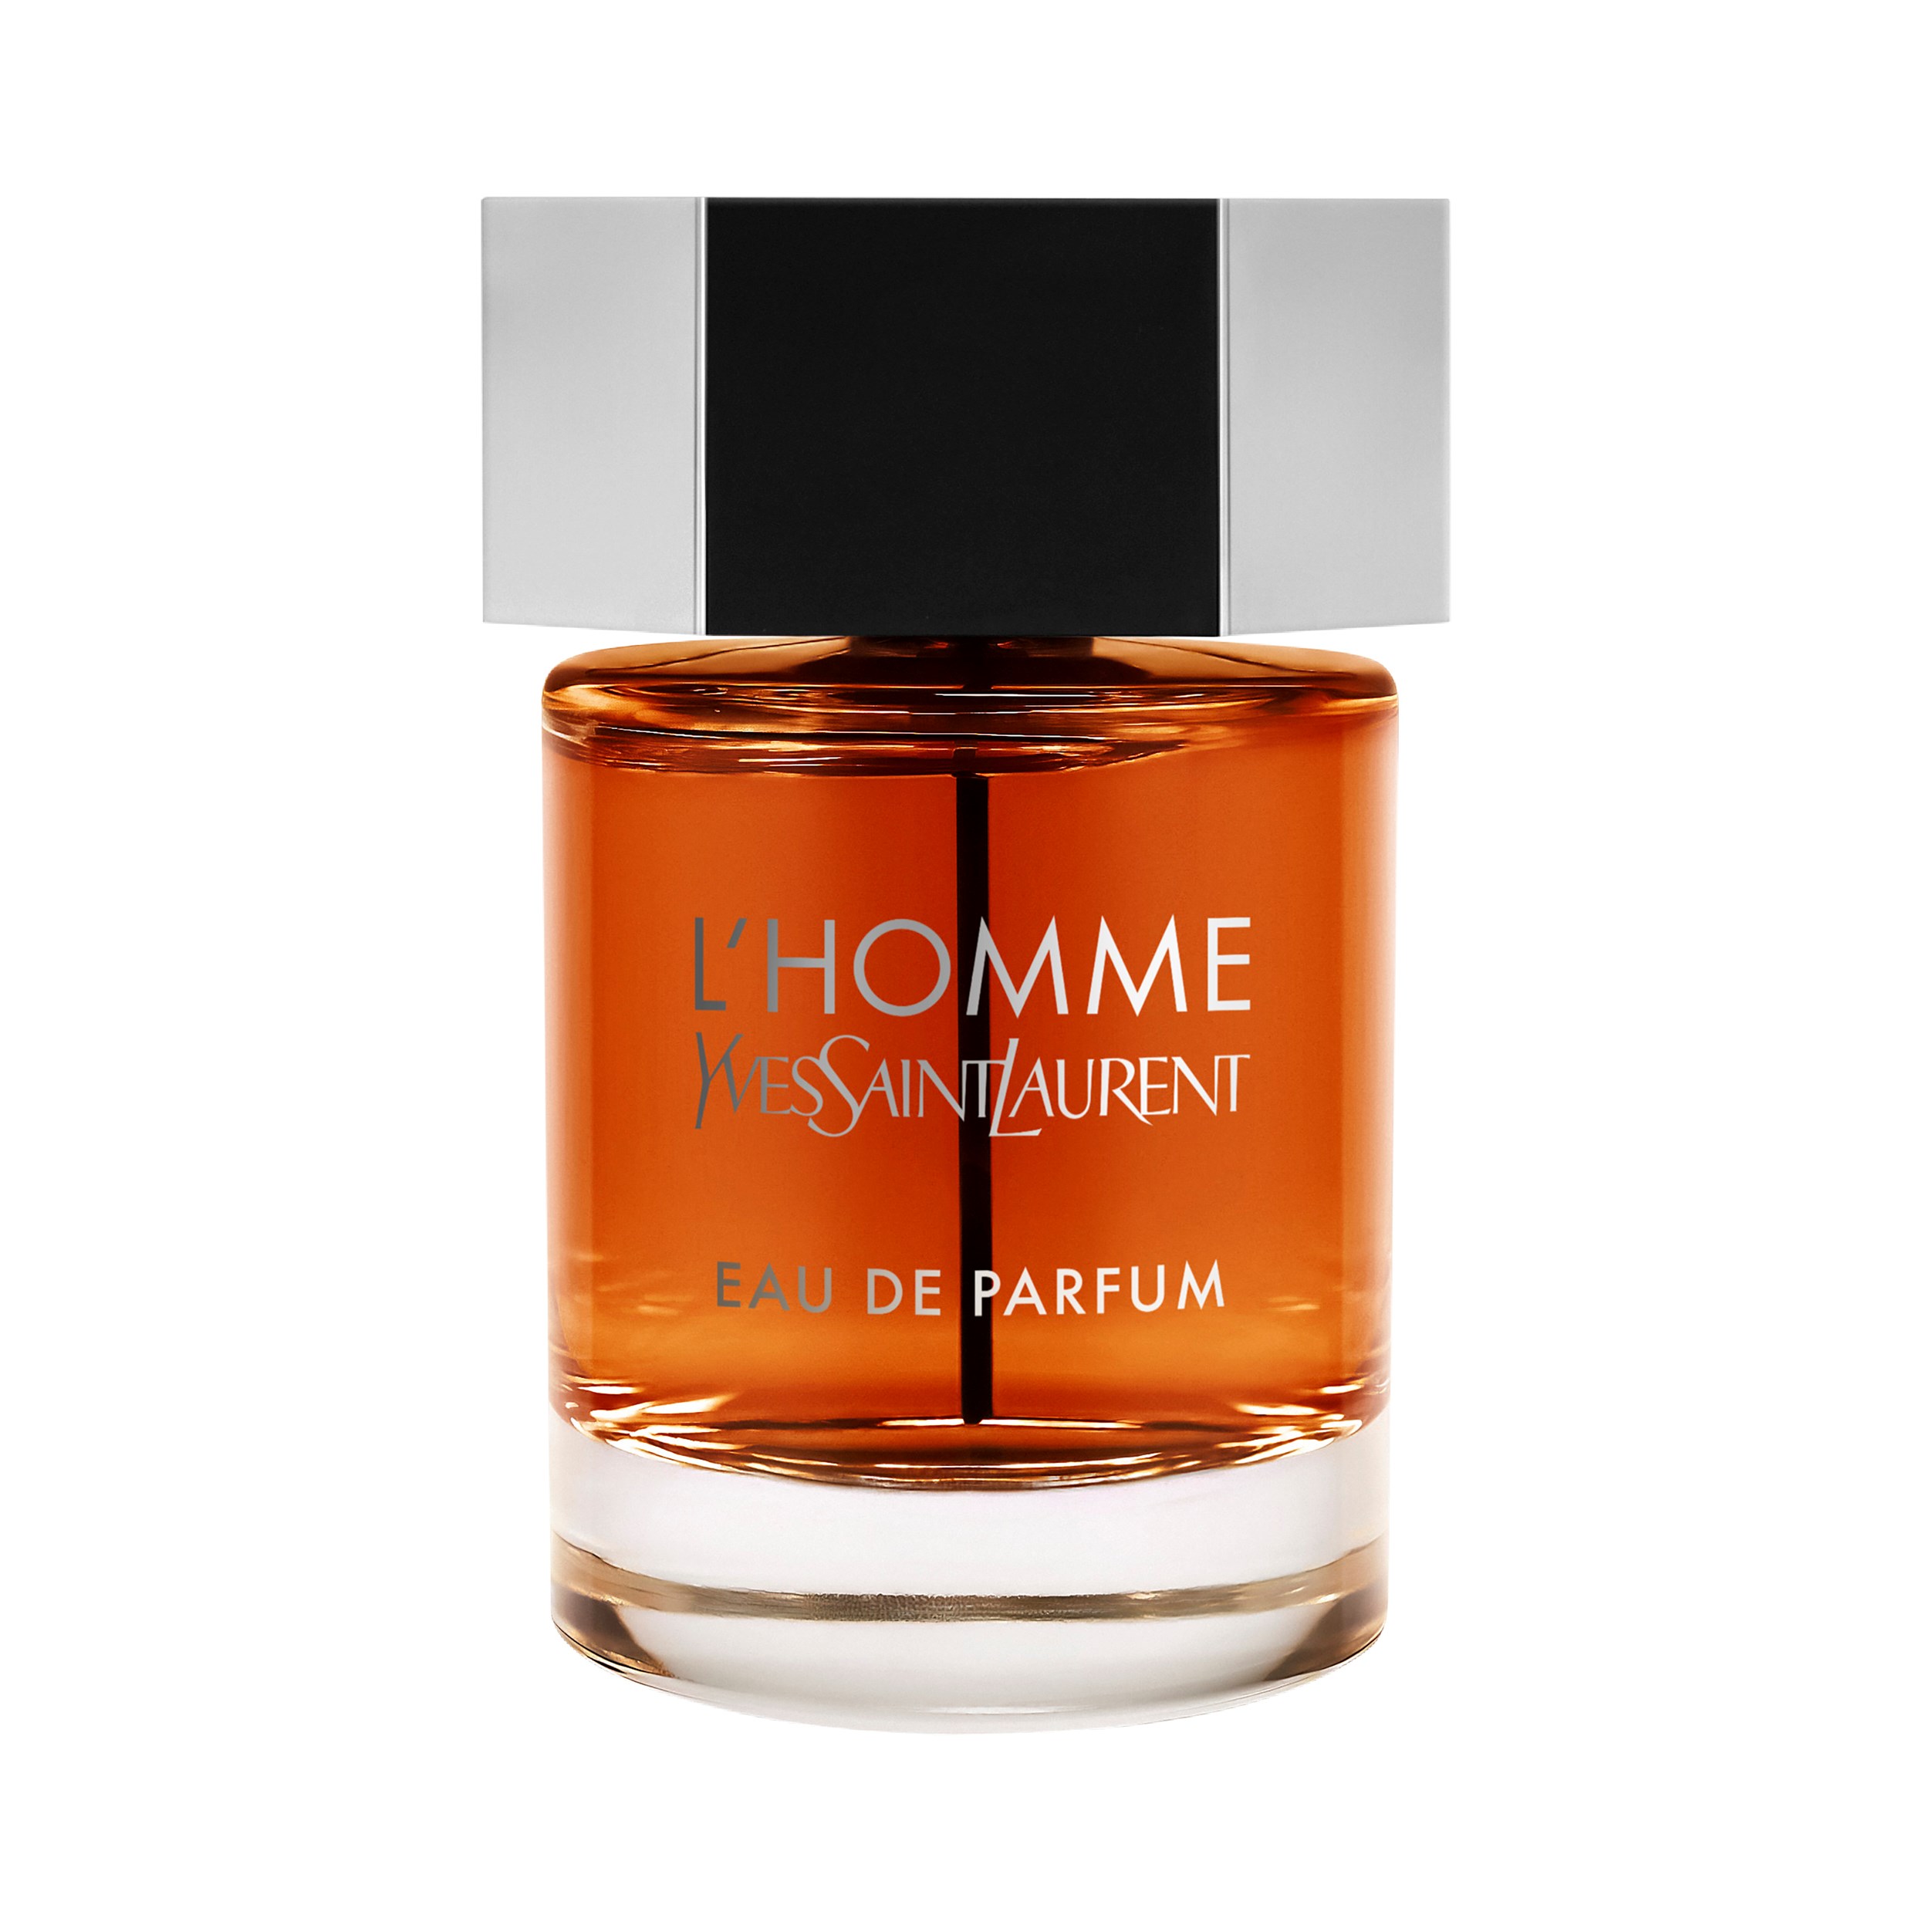 Läs mer om Yves Saint Laurent LHomme Eau de Parfum 100 ml